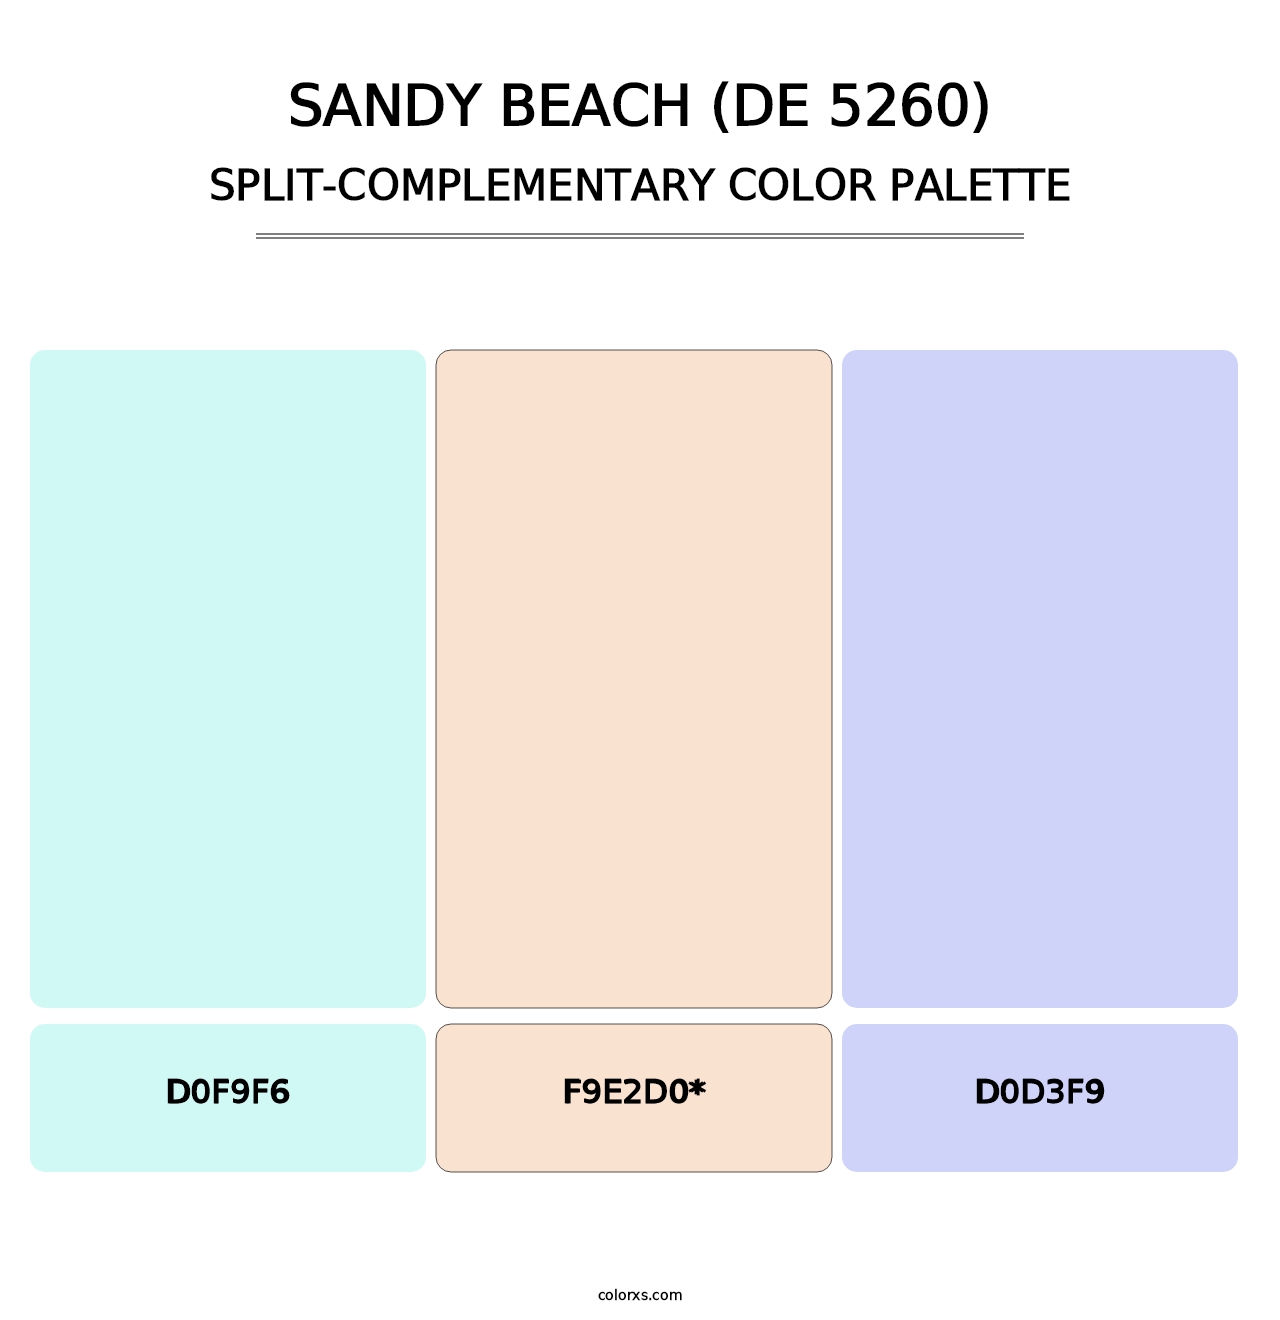 Sandy Beach (DE 5260) - Split-Complementary Color Palette